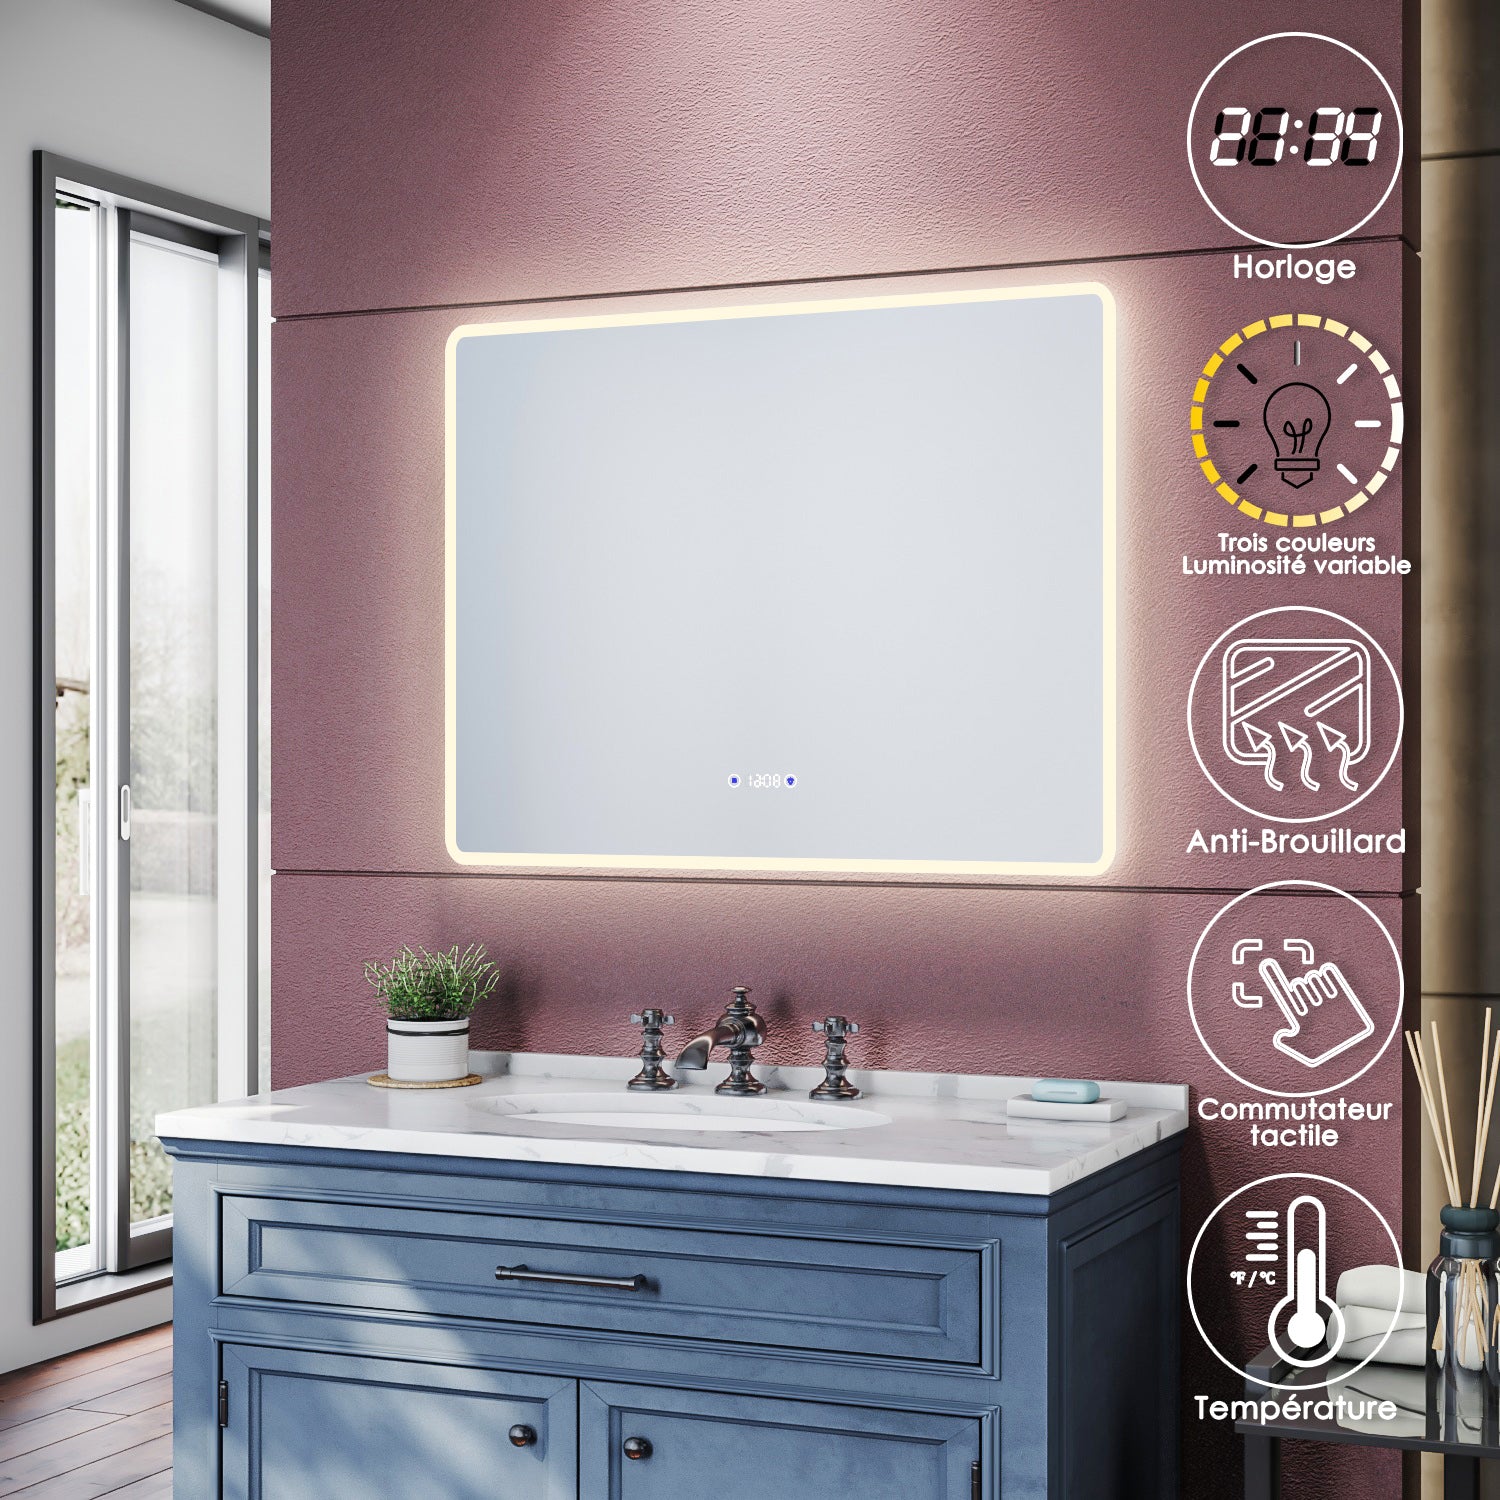 SIRHONA Miroir de salle de bains 900x700x35mm - Miroirs cosmétiques muraux - Miroir avec led illumination - Trois températures de couleur - Antibuée avec réglage de l'heure - SIRHONA